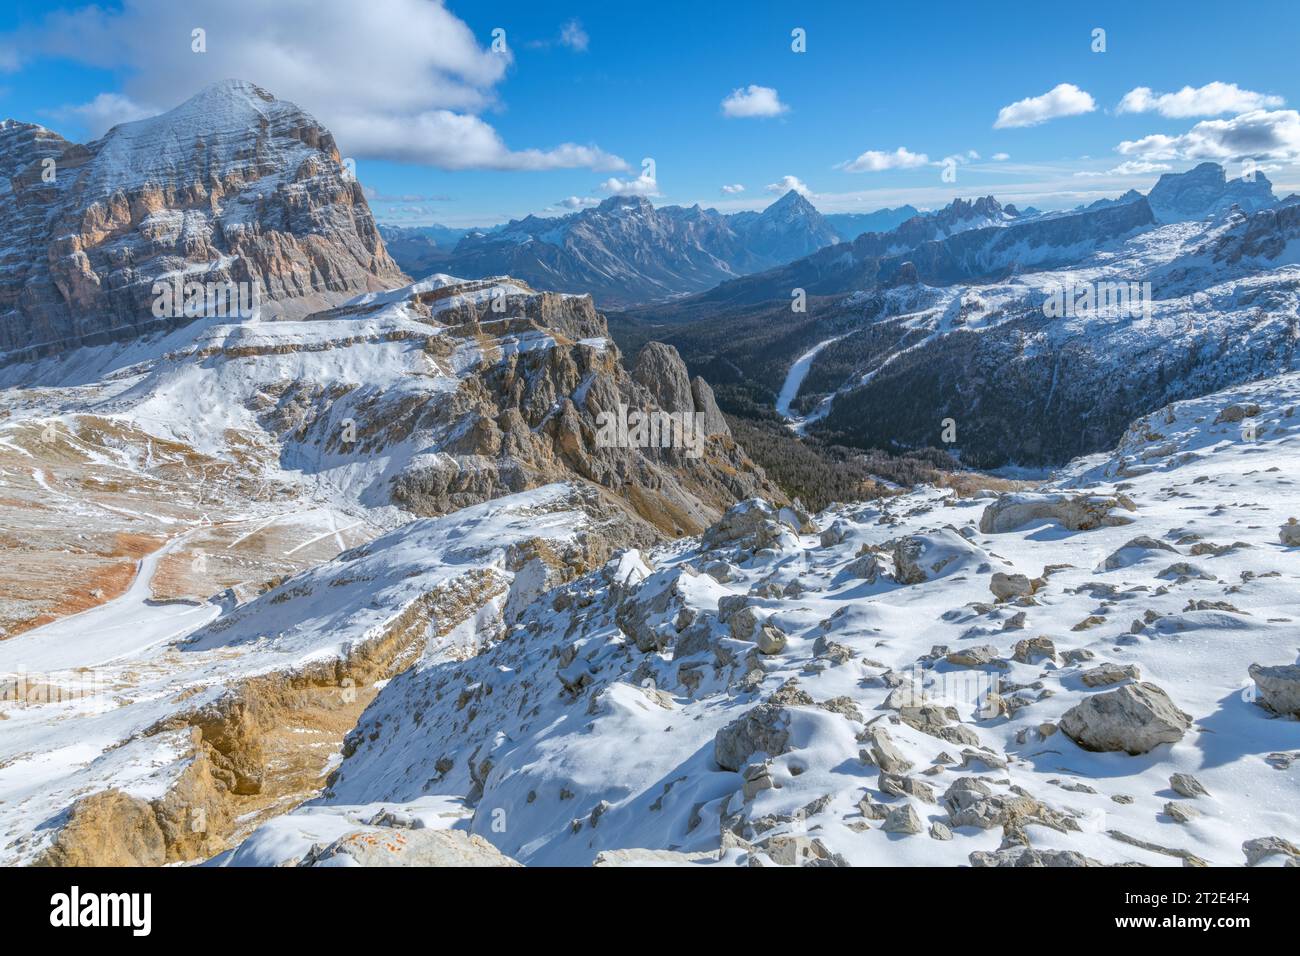 Vue panoramique depuis le sommet du mont Lagazuoi dans les Dolomites italiennes. Paysage montagneux enneigé surplombant Tofana di Rozes et le mont Pelmo Banque D'Images